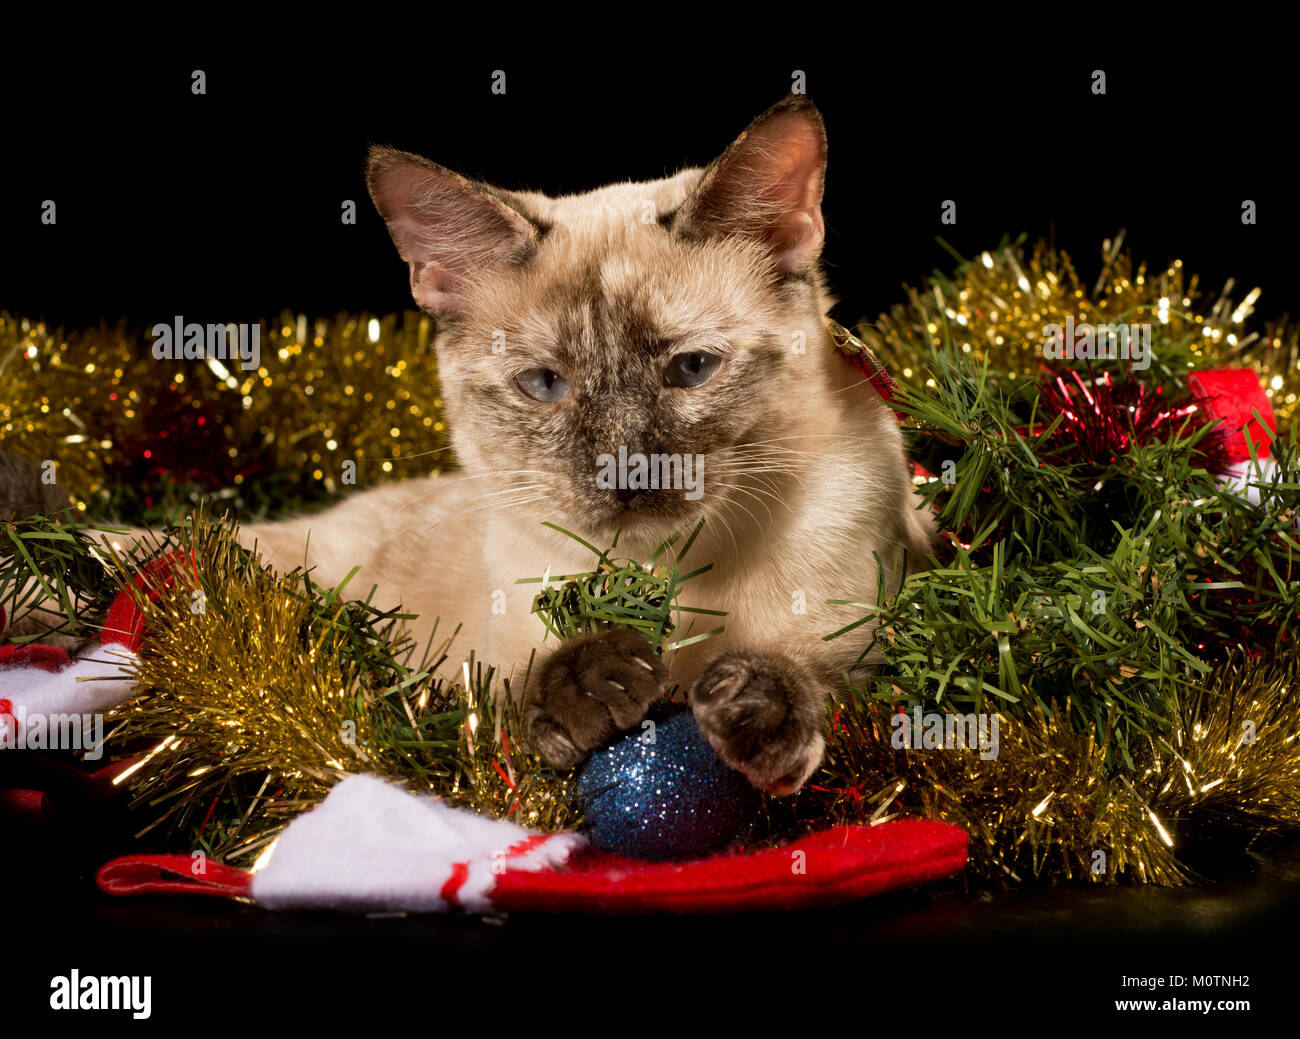 Adorabili e tortie point siamese Gattino nella scintillante di orpelli natalizi con le sue zampette su una pallina di colore blu su sfondo nero Foto Stock